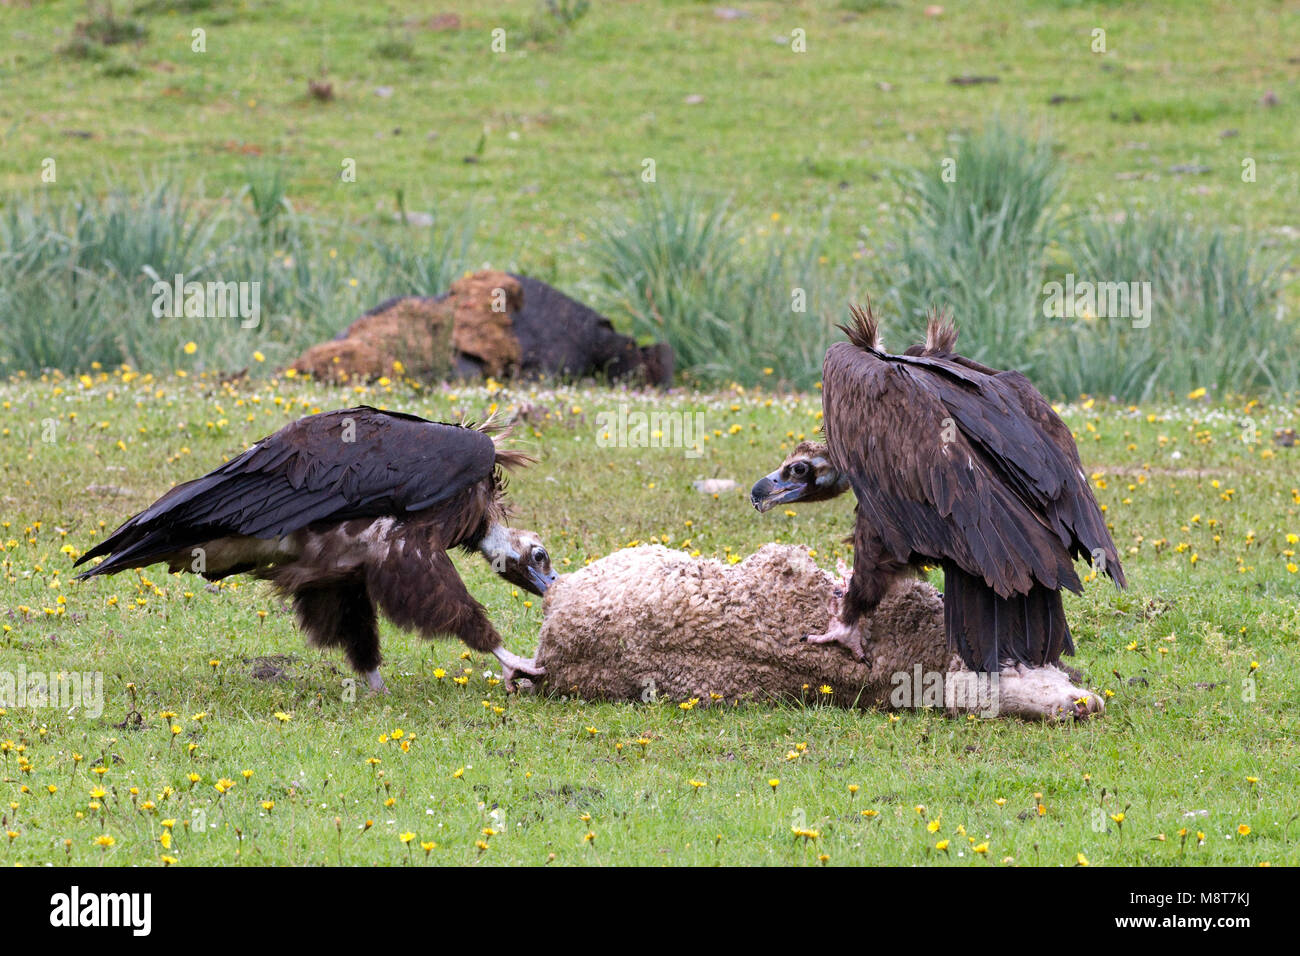 Monniksgieren etend van schaap; Cinereous Vultures eating from sheep Stock Photo